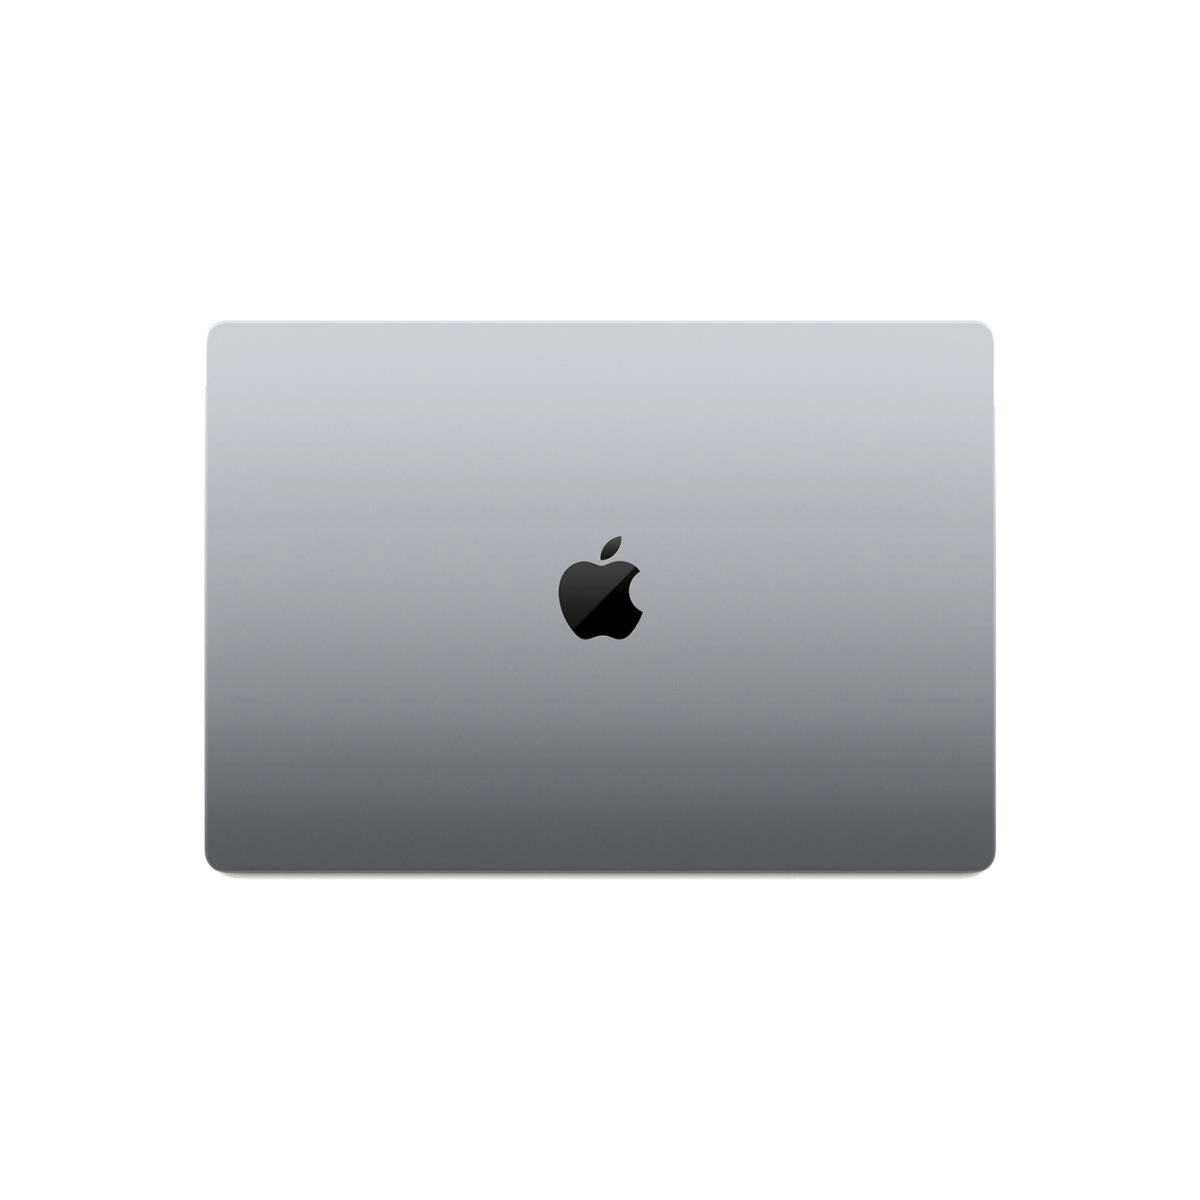 Apple 16-inch MacBook Pro: M1 Pro chip, 10-core CPU, 16-core GPU